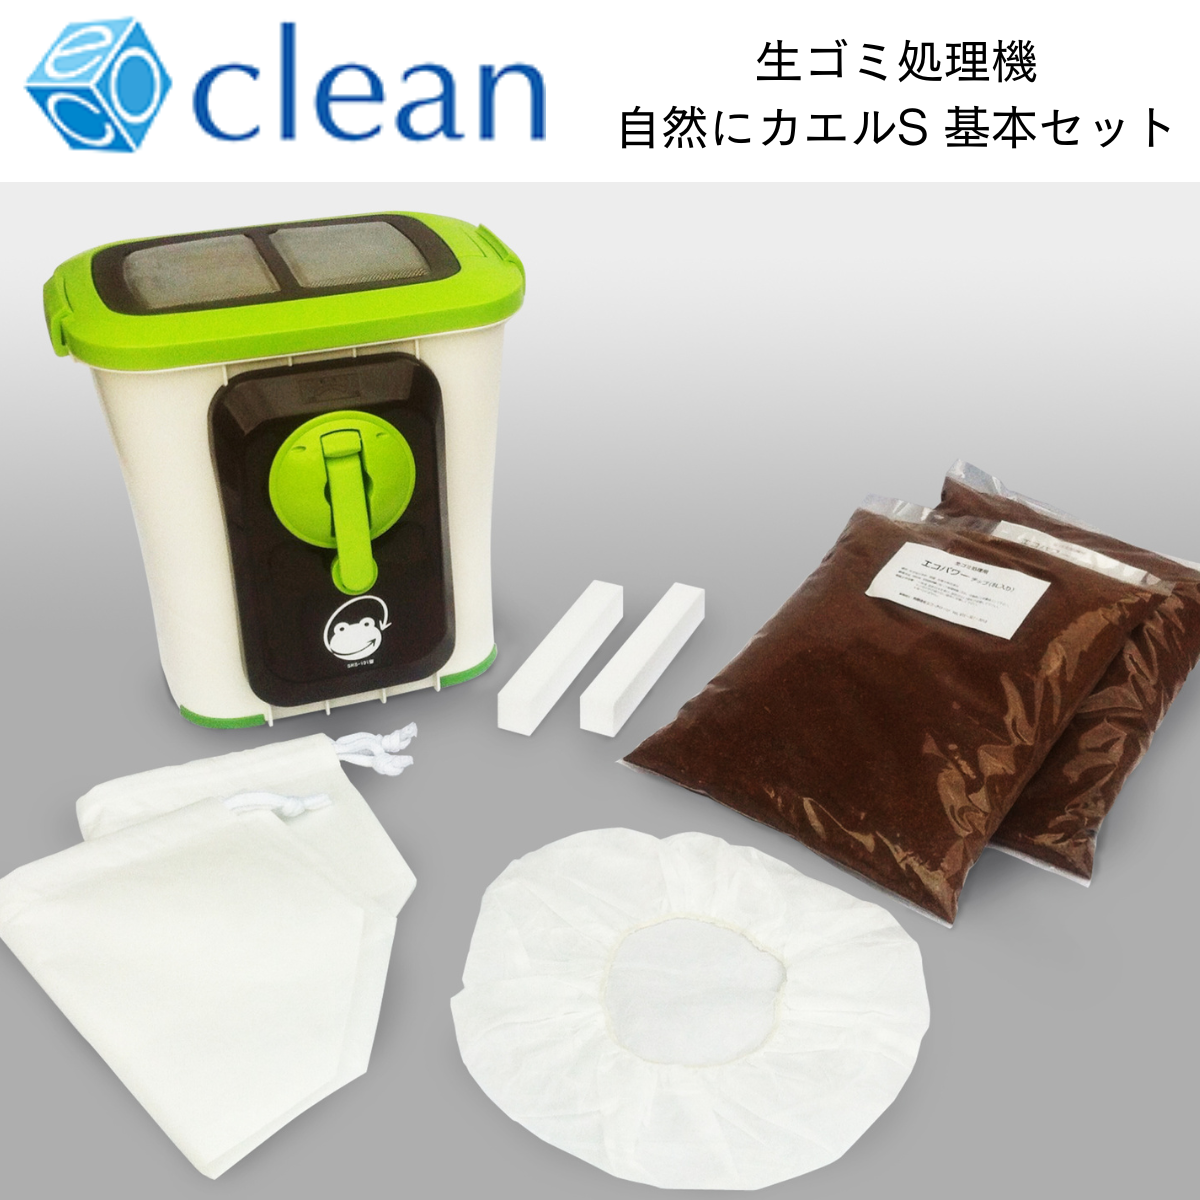 【エコ・クリーン】家庭用生ごみ処理機自然にカエルS 基本セット